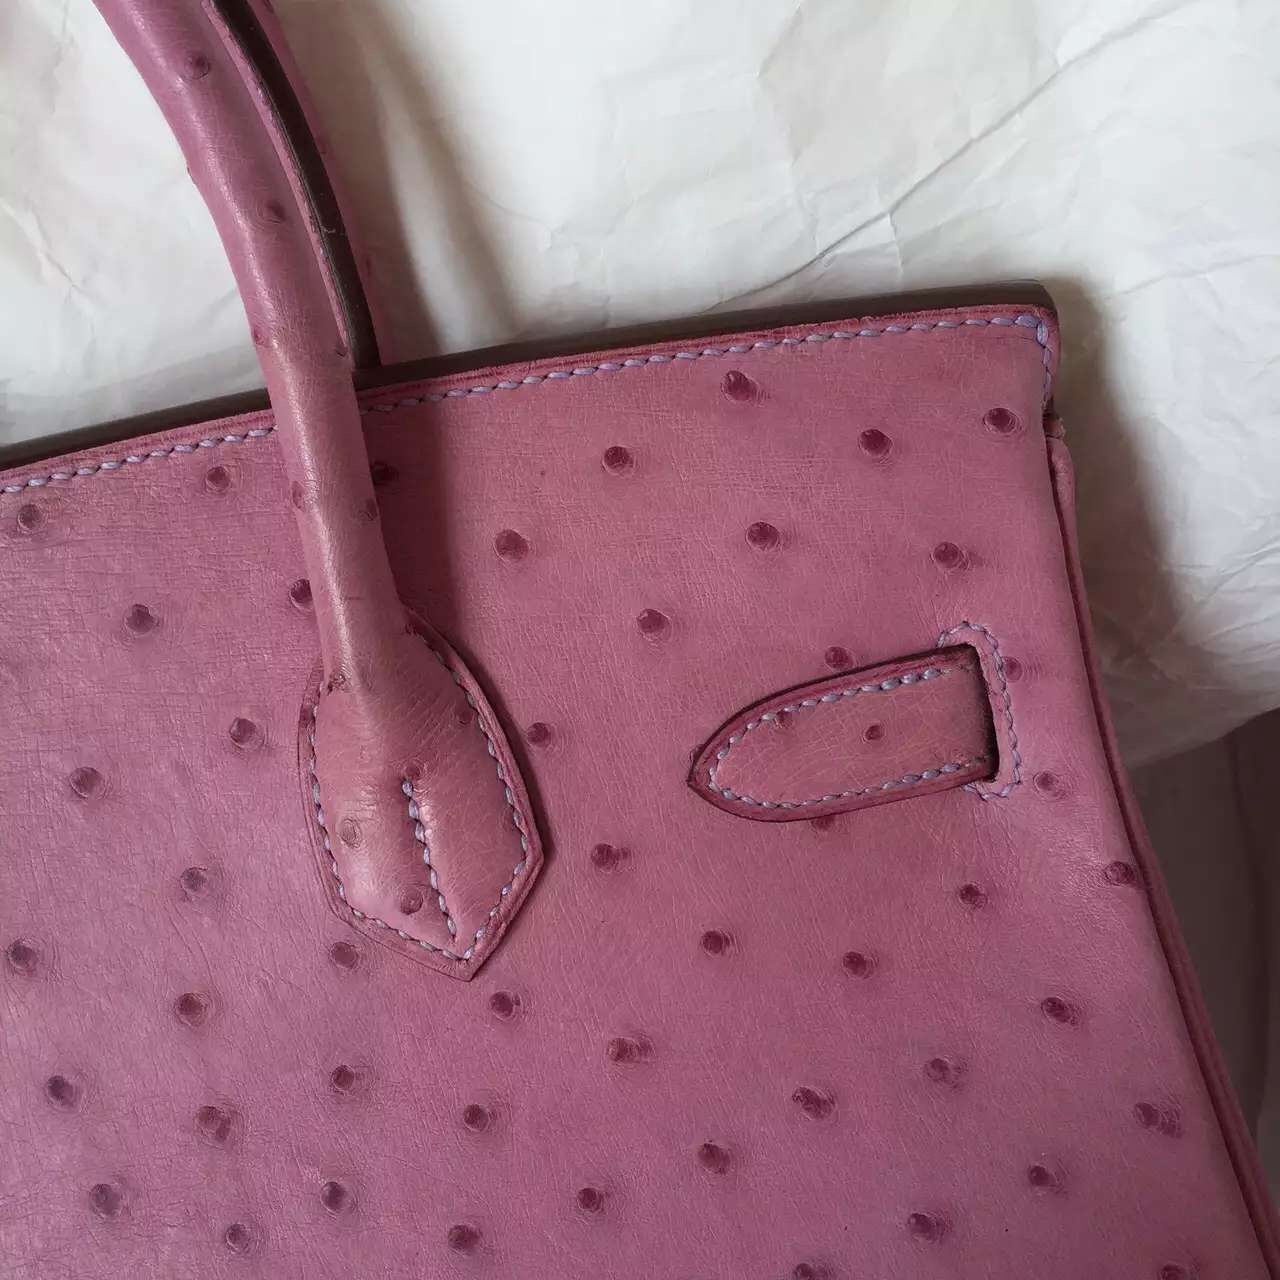 Wholesale Hermes Birkin Bag in Pink Purple Ostrich Leather Ladies&#8217; Handbag 30CM